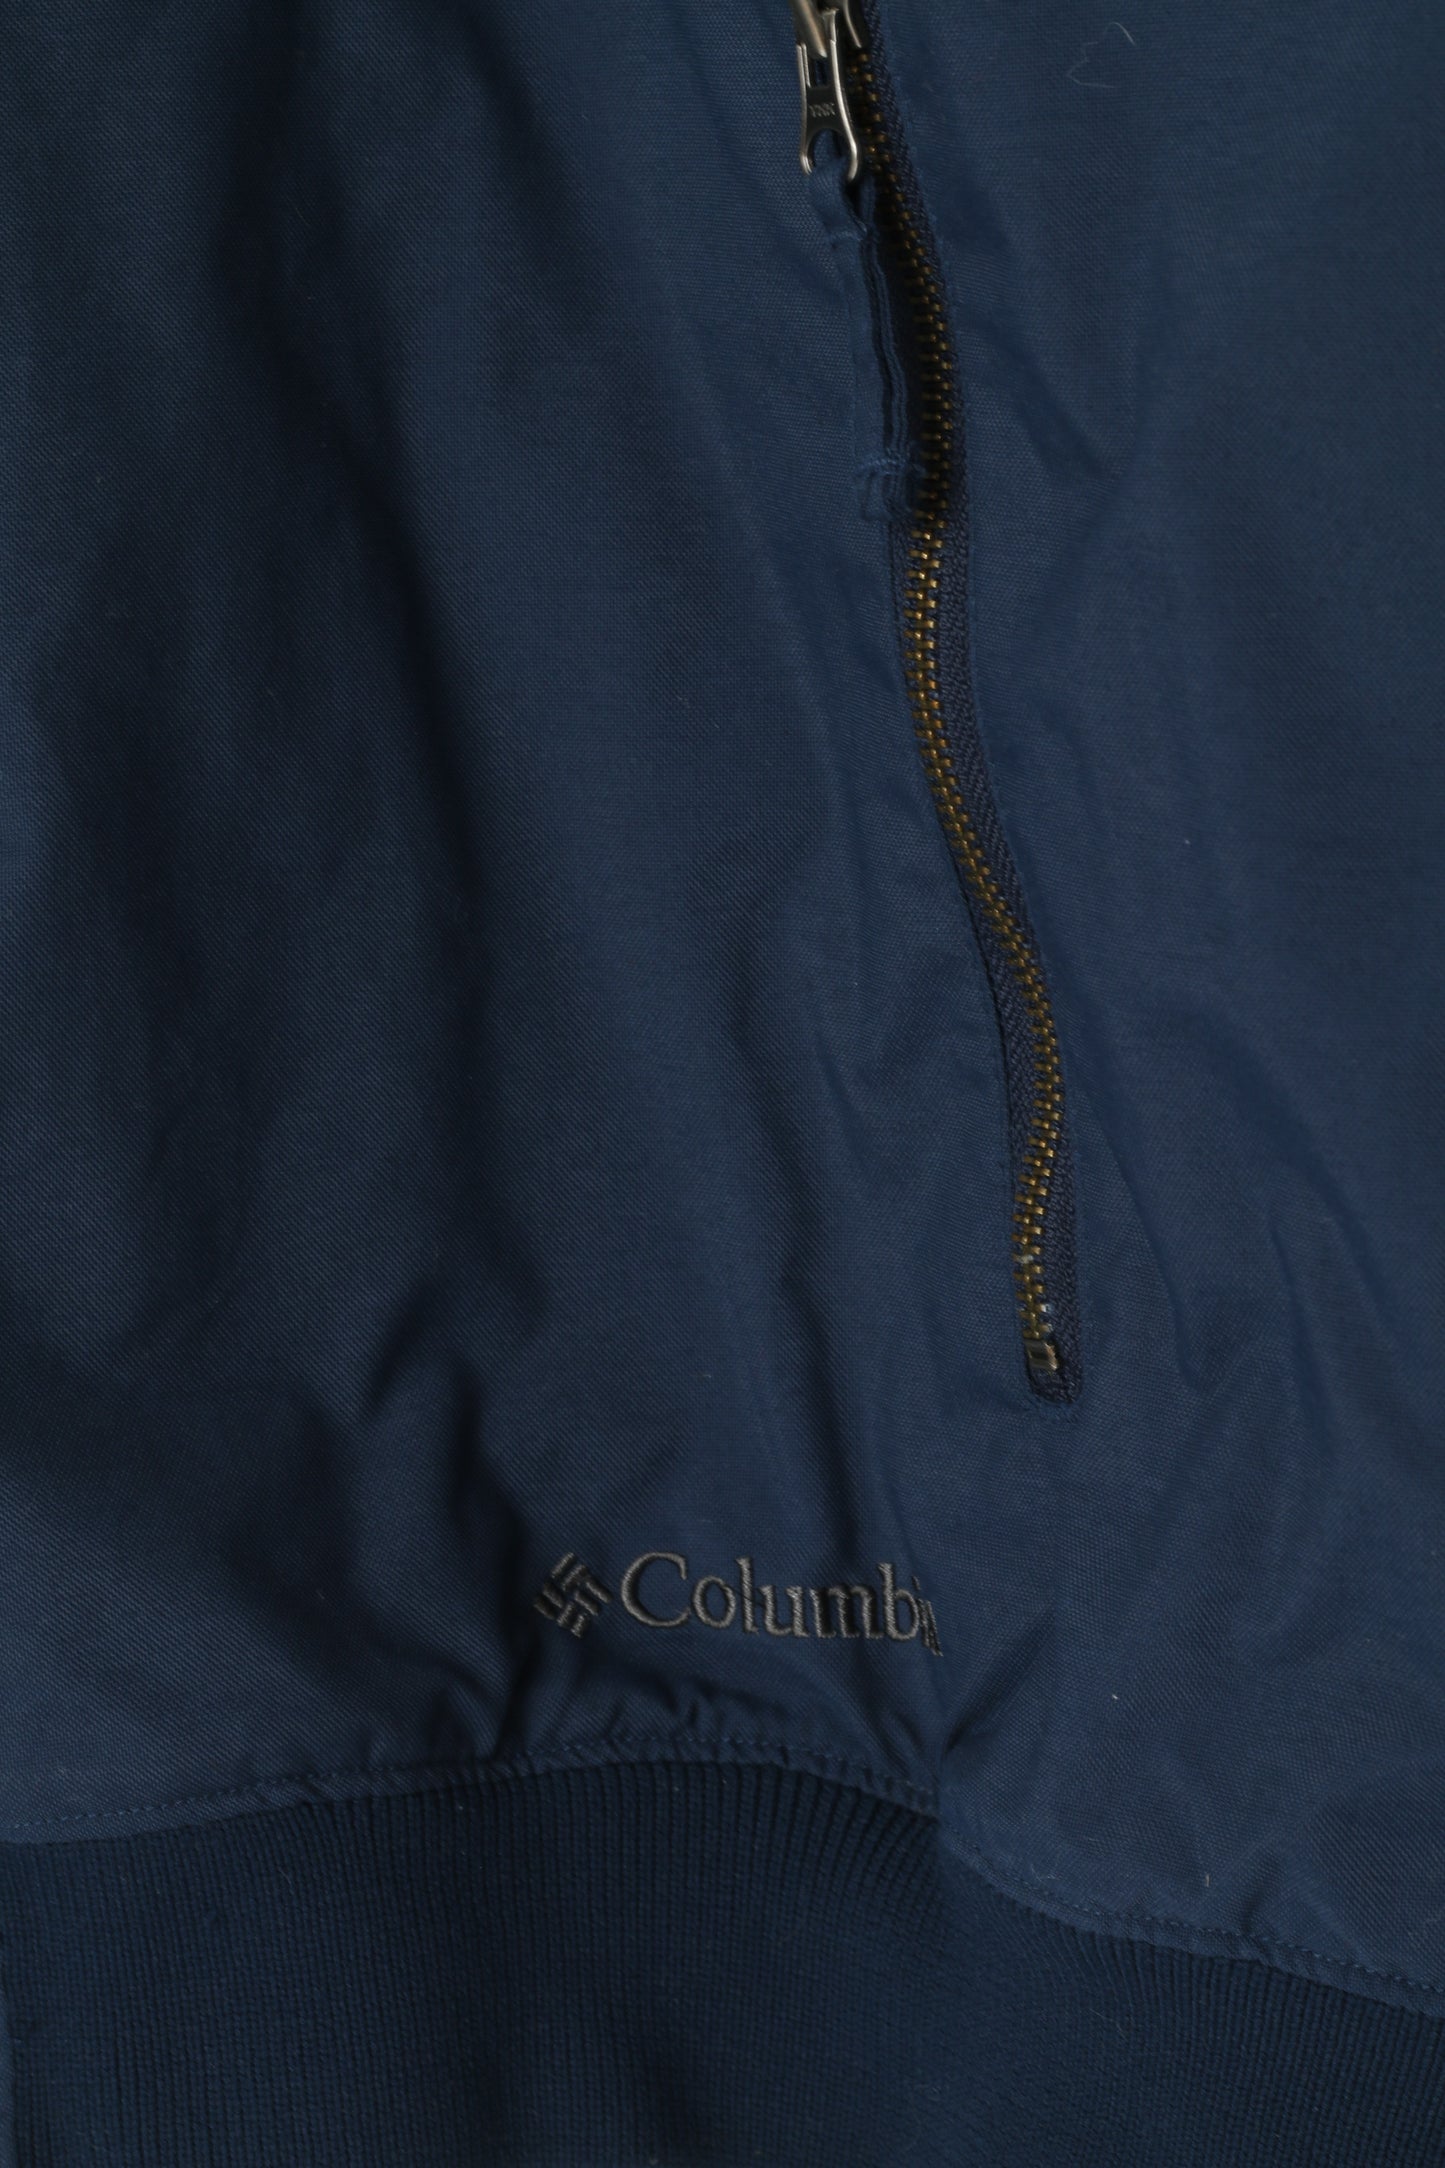 Columbia Sportswear Men XXL Bomber Jacket Navy Nylon Waterproof Fleece Lined Top